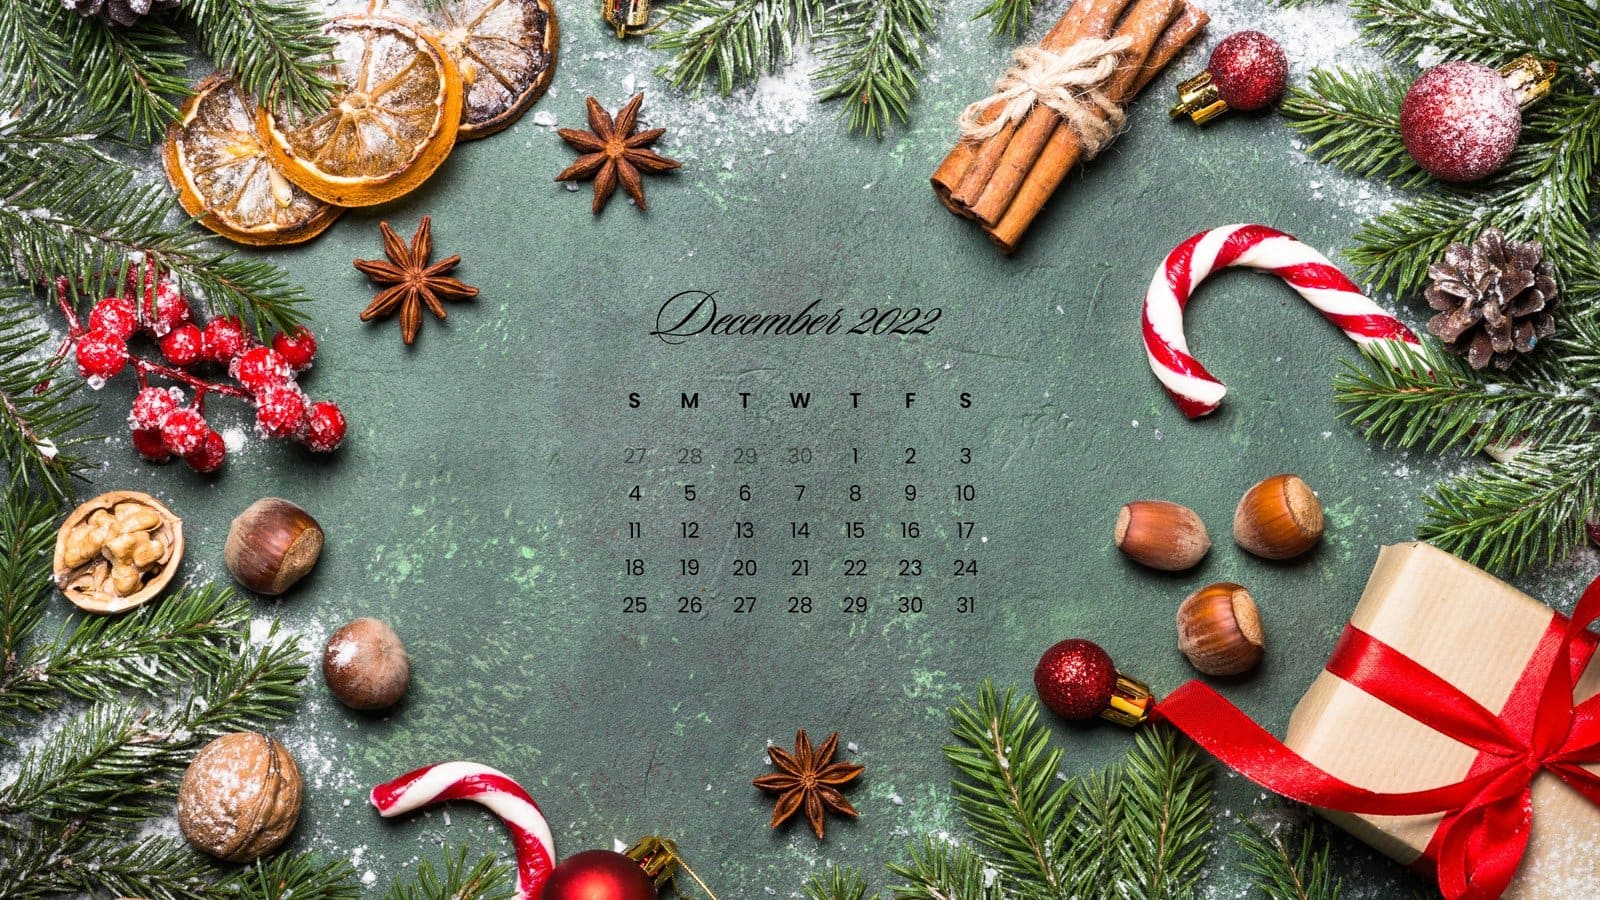 Lịch tháng 12 năm 2022 đang trở thành tâm điểm của sự quan tâm và chú ý của rất nhiều người. Hãy cùng điểm lại và lên kế hoạch cho những hoạt động sôi nổi trong mùa lễ hội này. Hình ảnh liên quan sẽ giúp bạn tưởng tượng và chuẩn bị một cách tốt nhất cho mùa lễ Noel sắp tới.